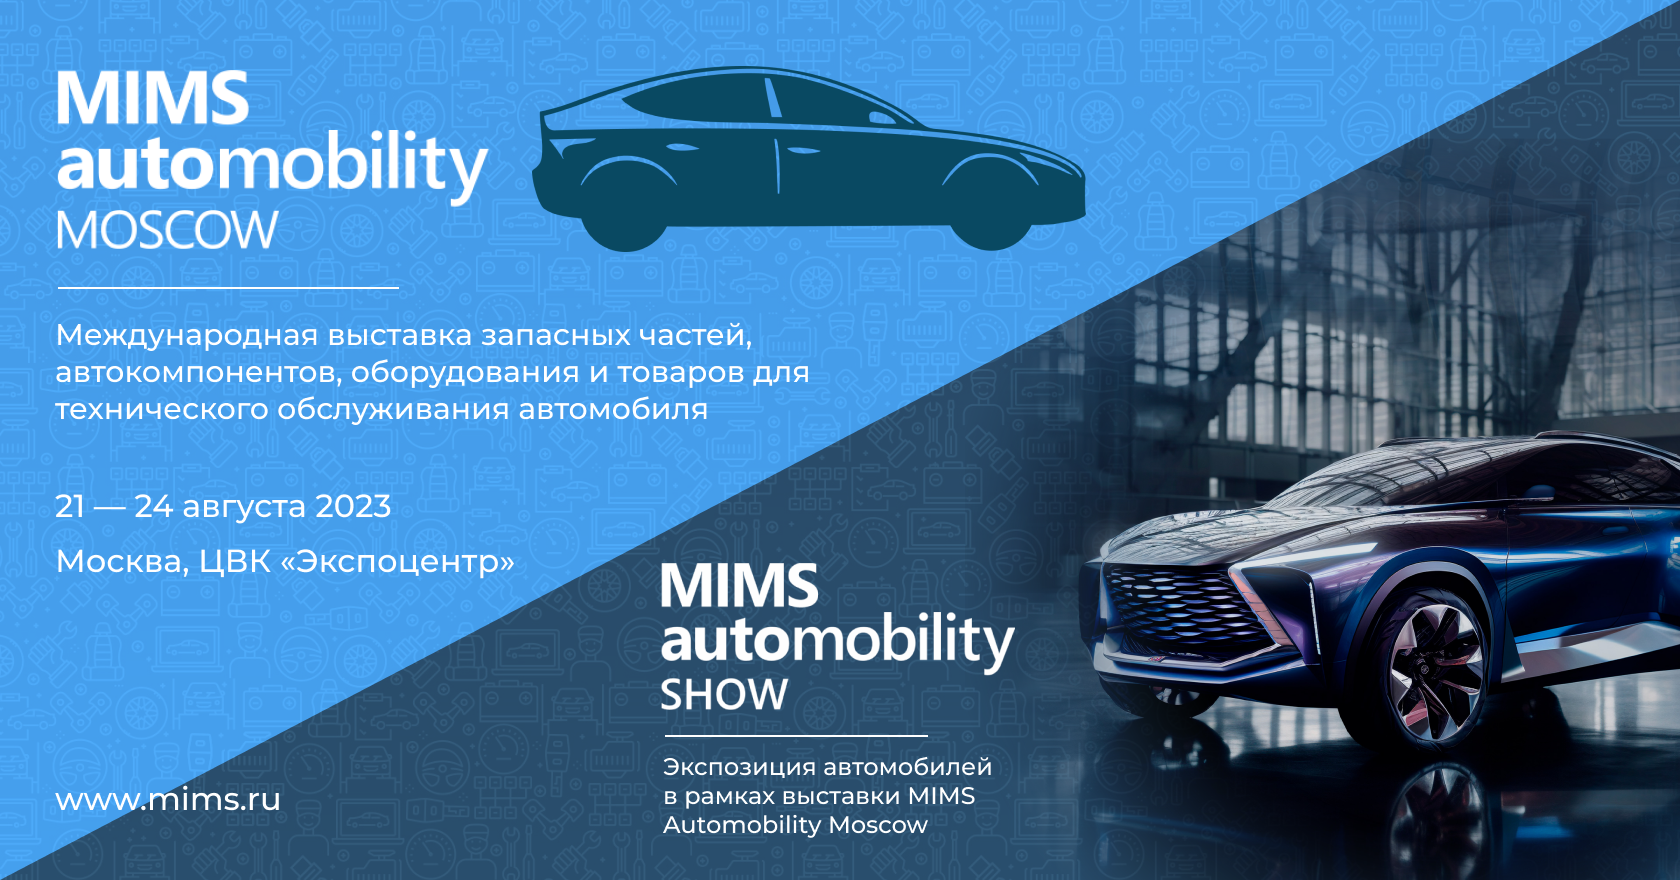 MIMS Automobility Moscow откроется 24 августа - все подробности